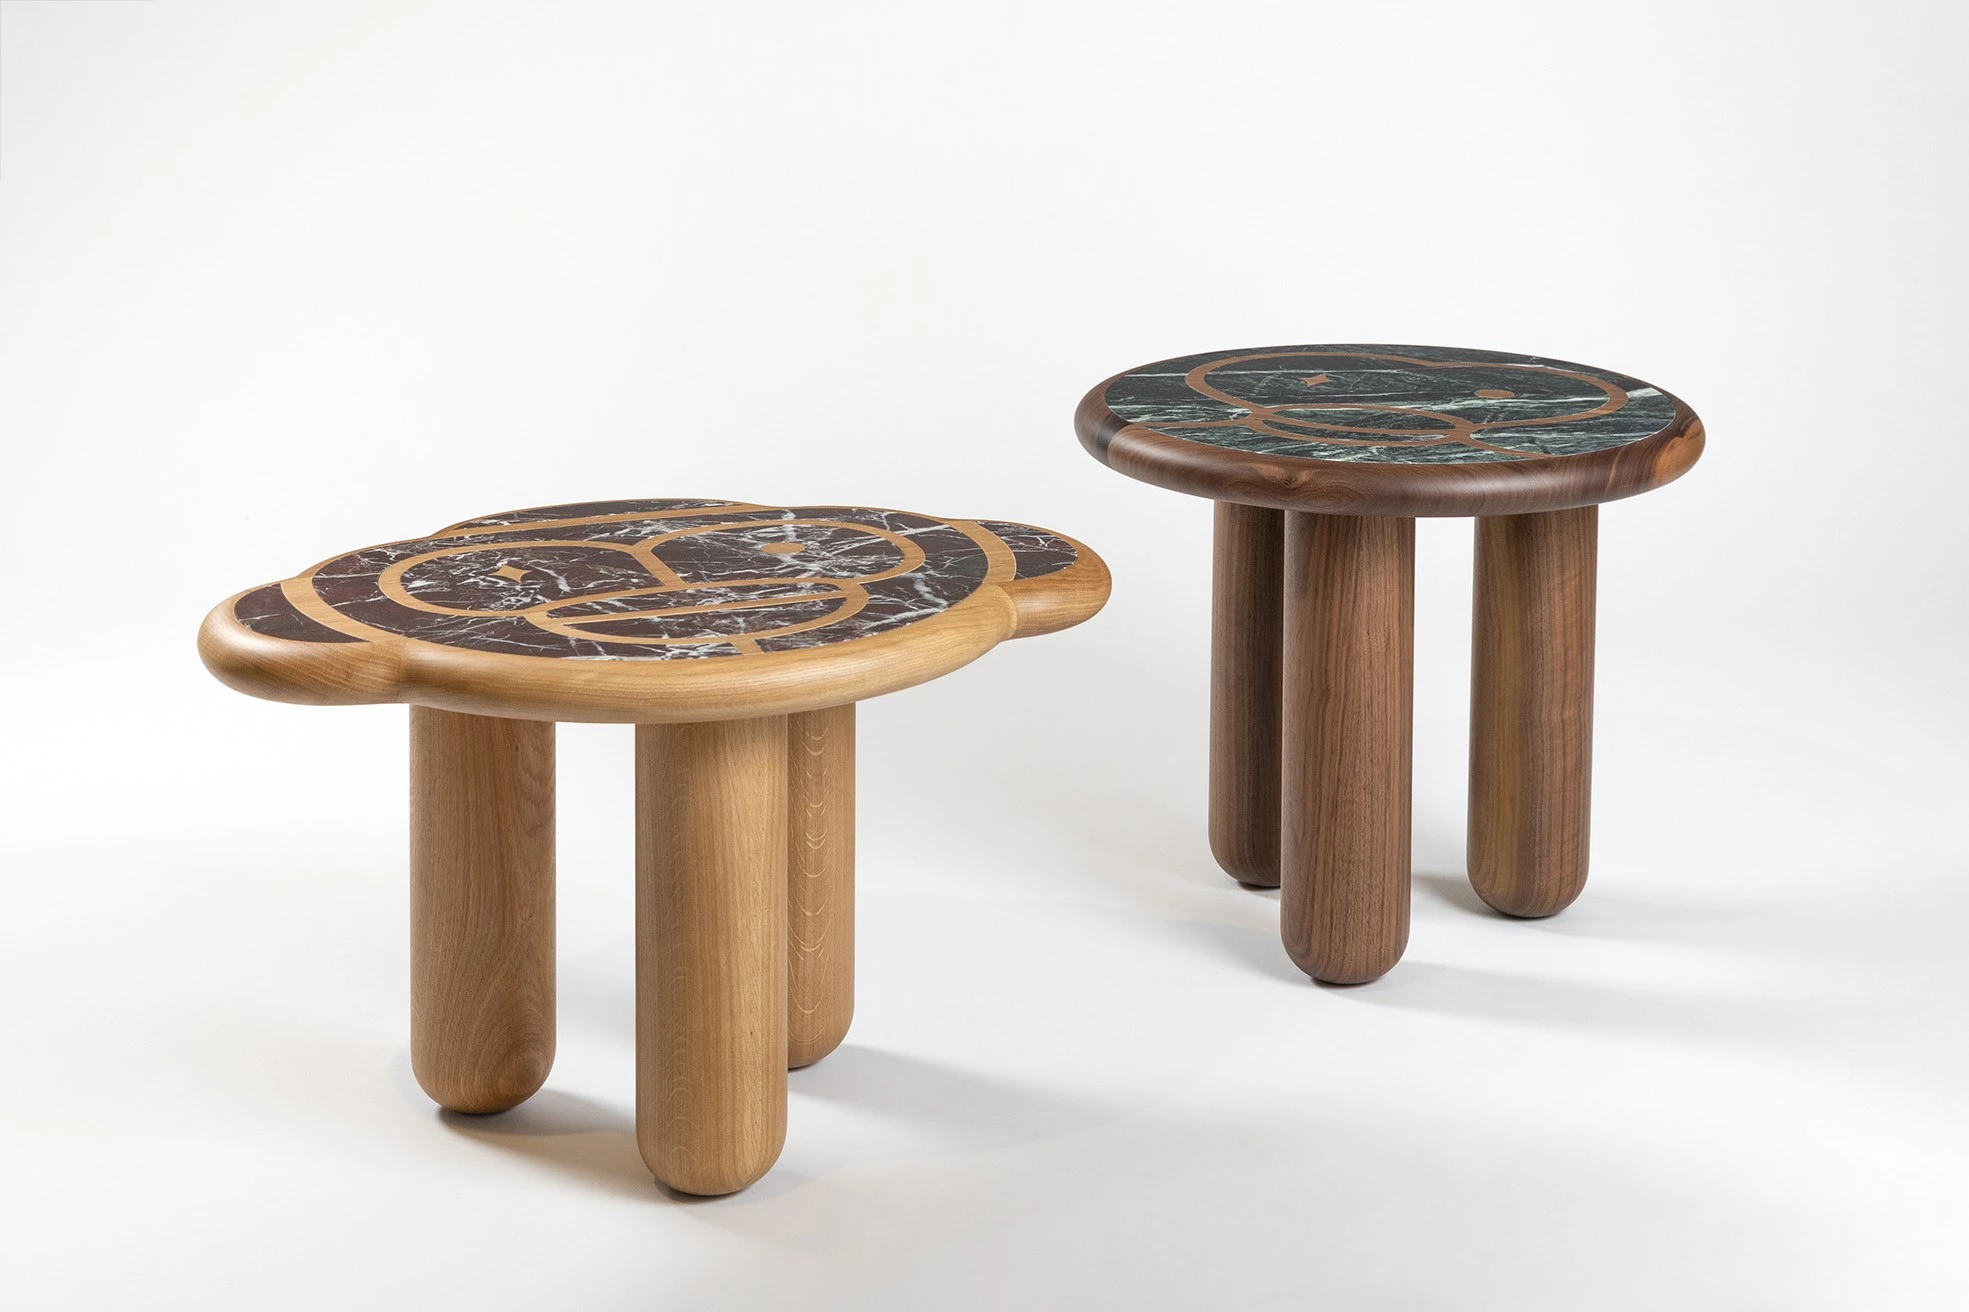 Monkey side table  - Jaime Hayon - Side table - Galerie kreo